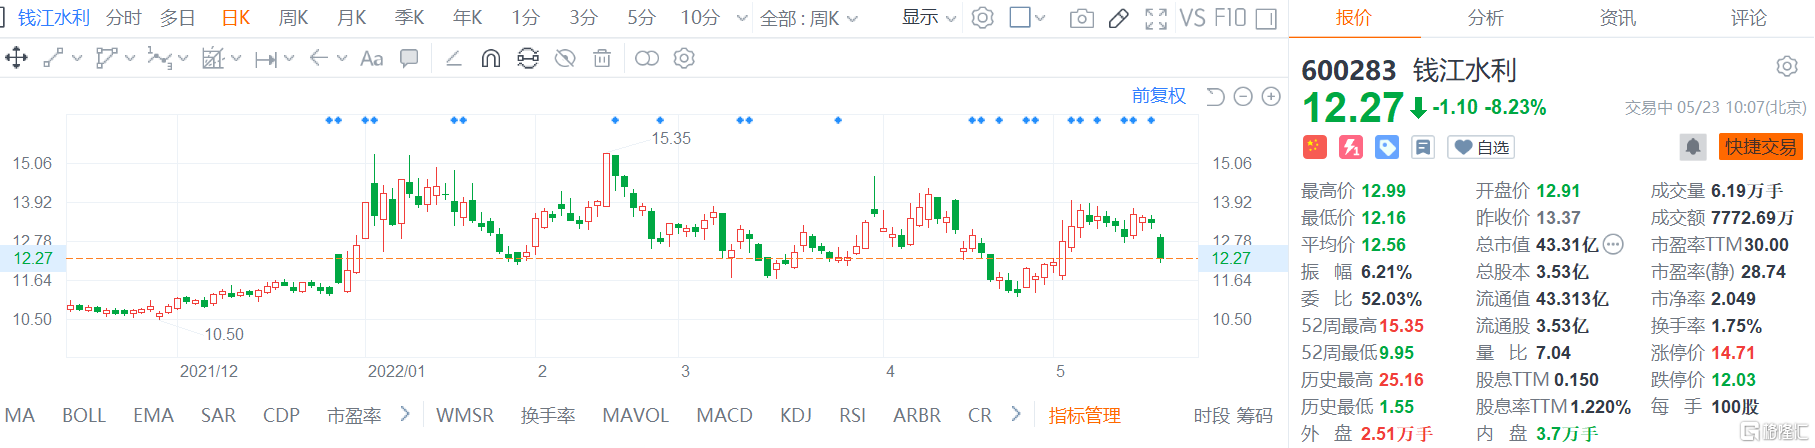 钱江水利(600283.SH)低开低走现报12.27元 地产股震荡走低 